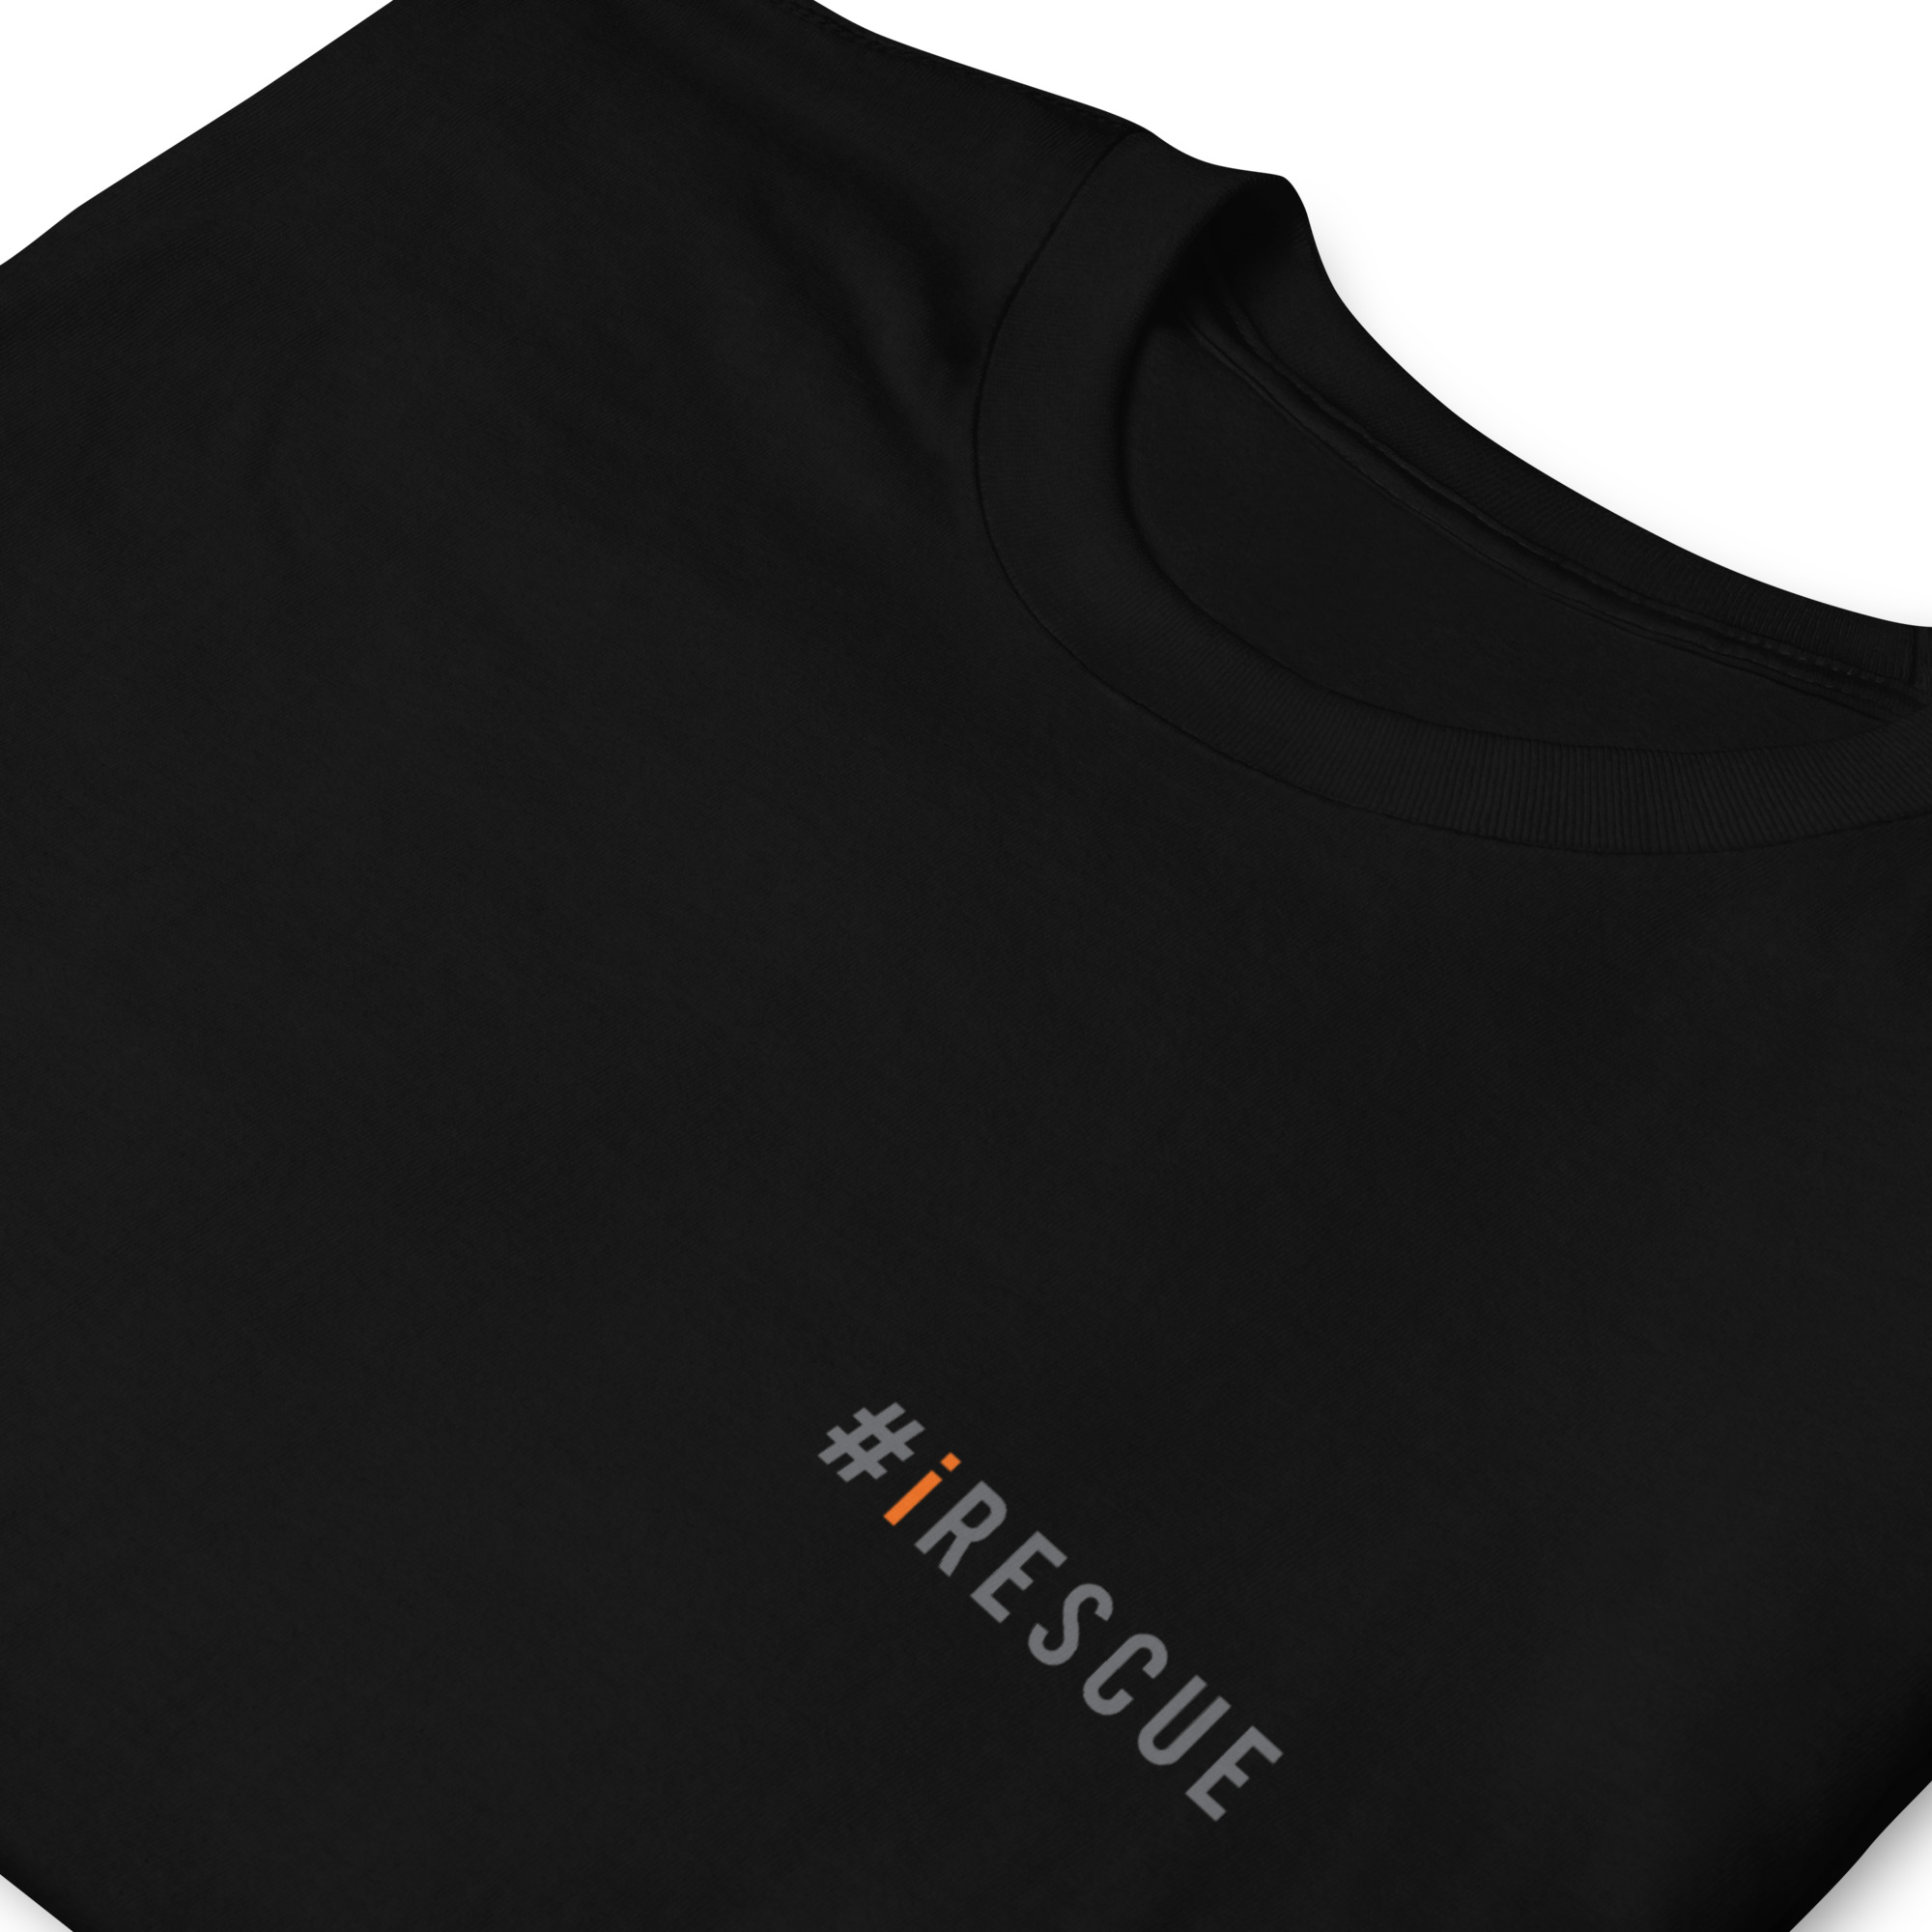 unisex-basic-softstyle-t-shirt-black-zoomed-in-633e79d215922.jpg